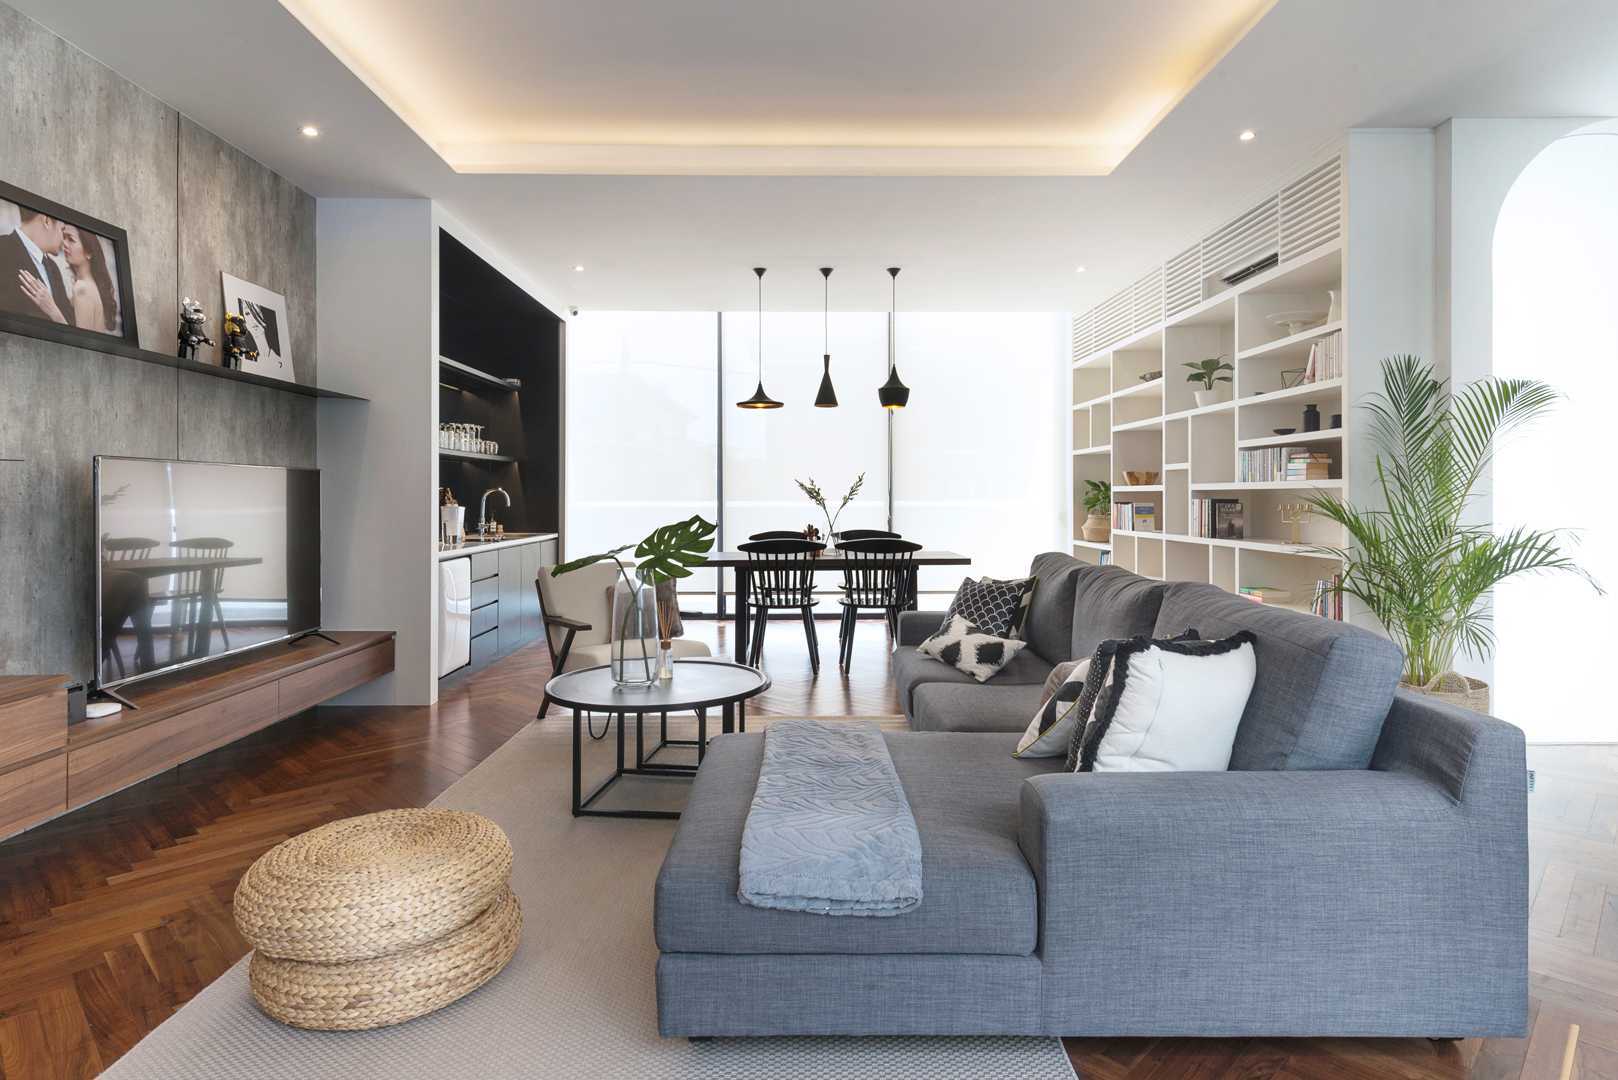 91 Ide Cantik Design Interior Rumah Terbaru 2020